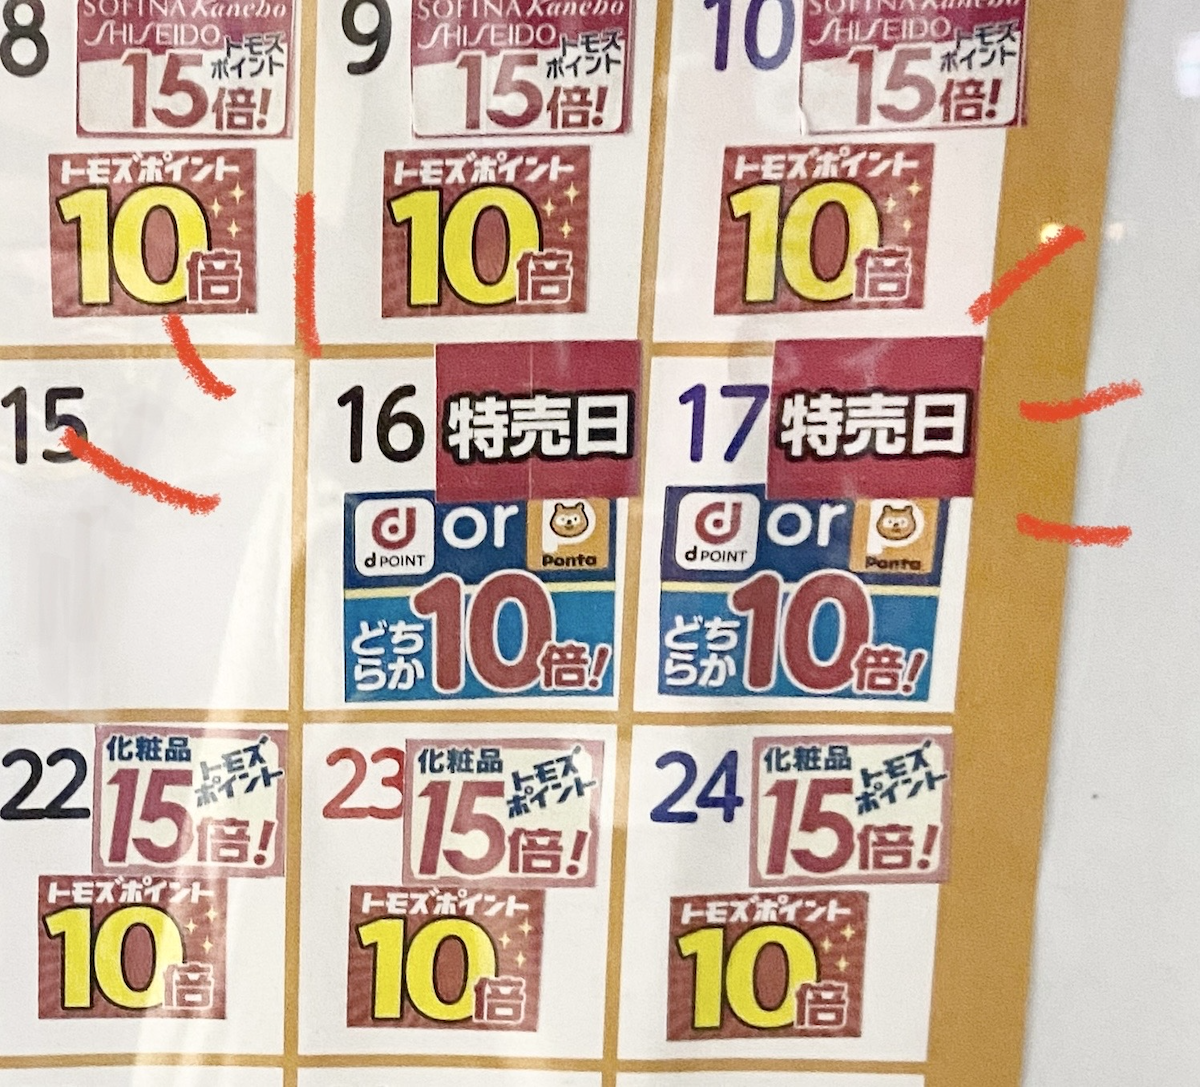 写真：トモズ店舗入口のイベントカレンダー。「dポイントorPontaポイントどちらか10倍」の日。